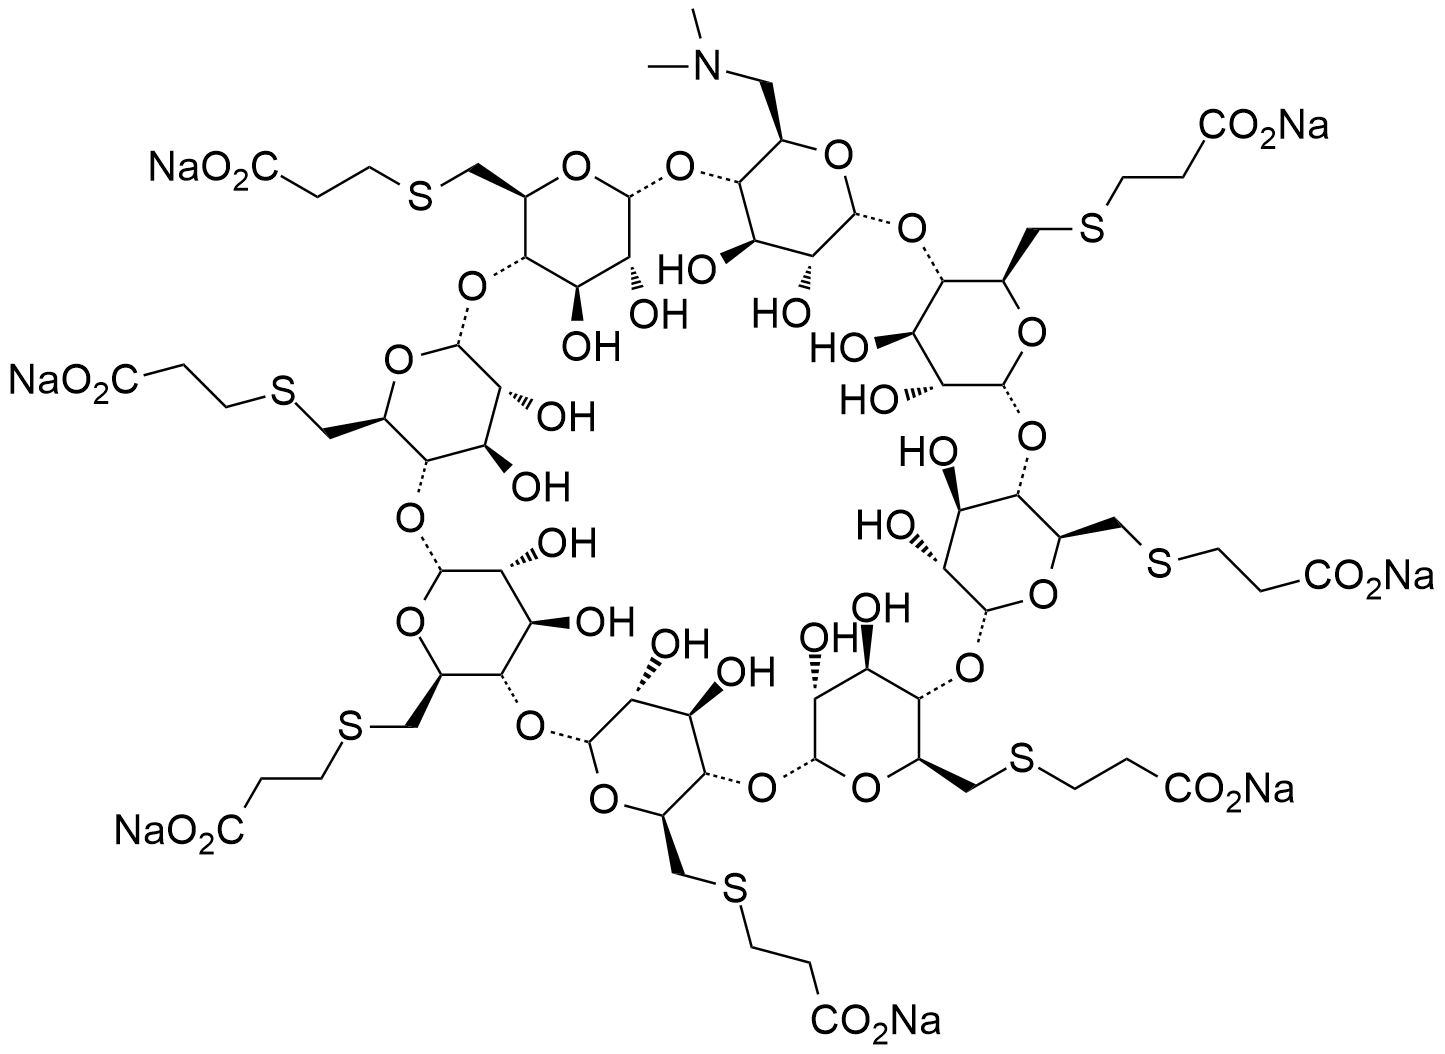 舒更葡糖钠Org198786-1杂质